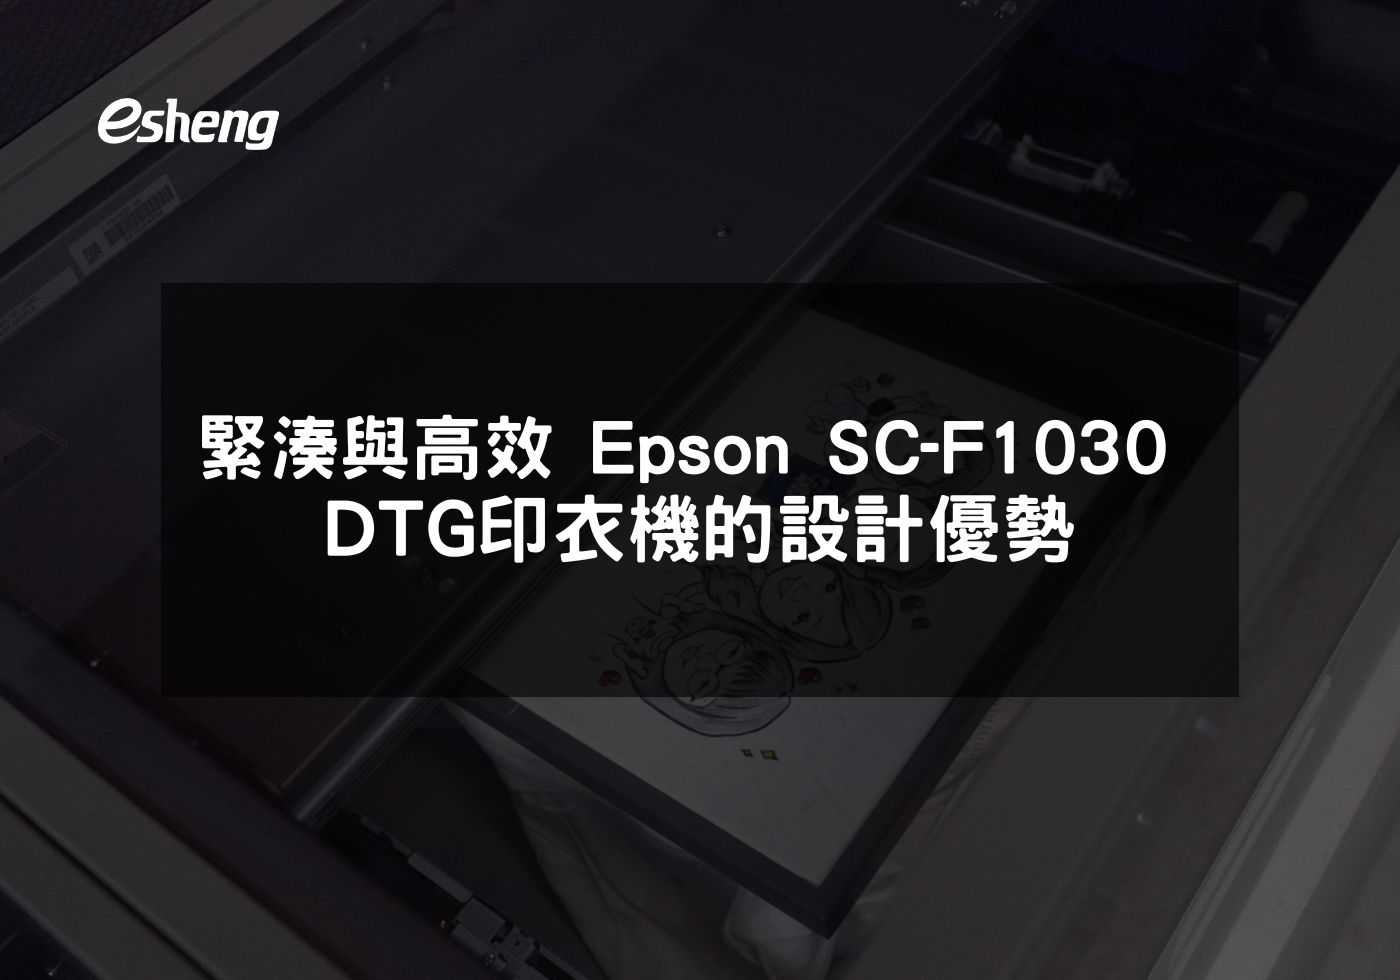 閱讀更多文章 緊湊與高效 Epson SC-F1030 DTG印衣機的設計優勢